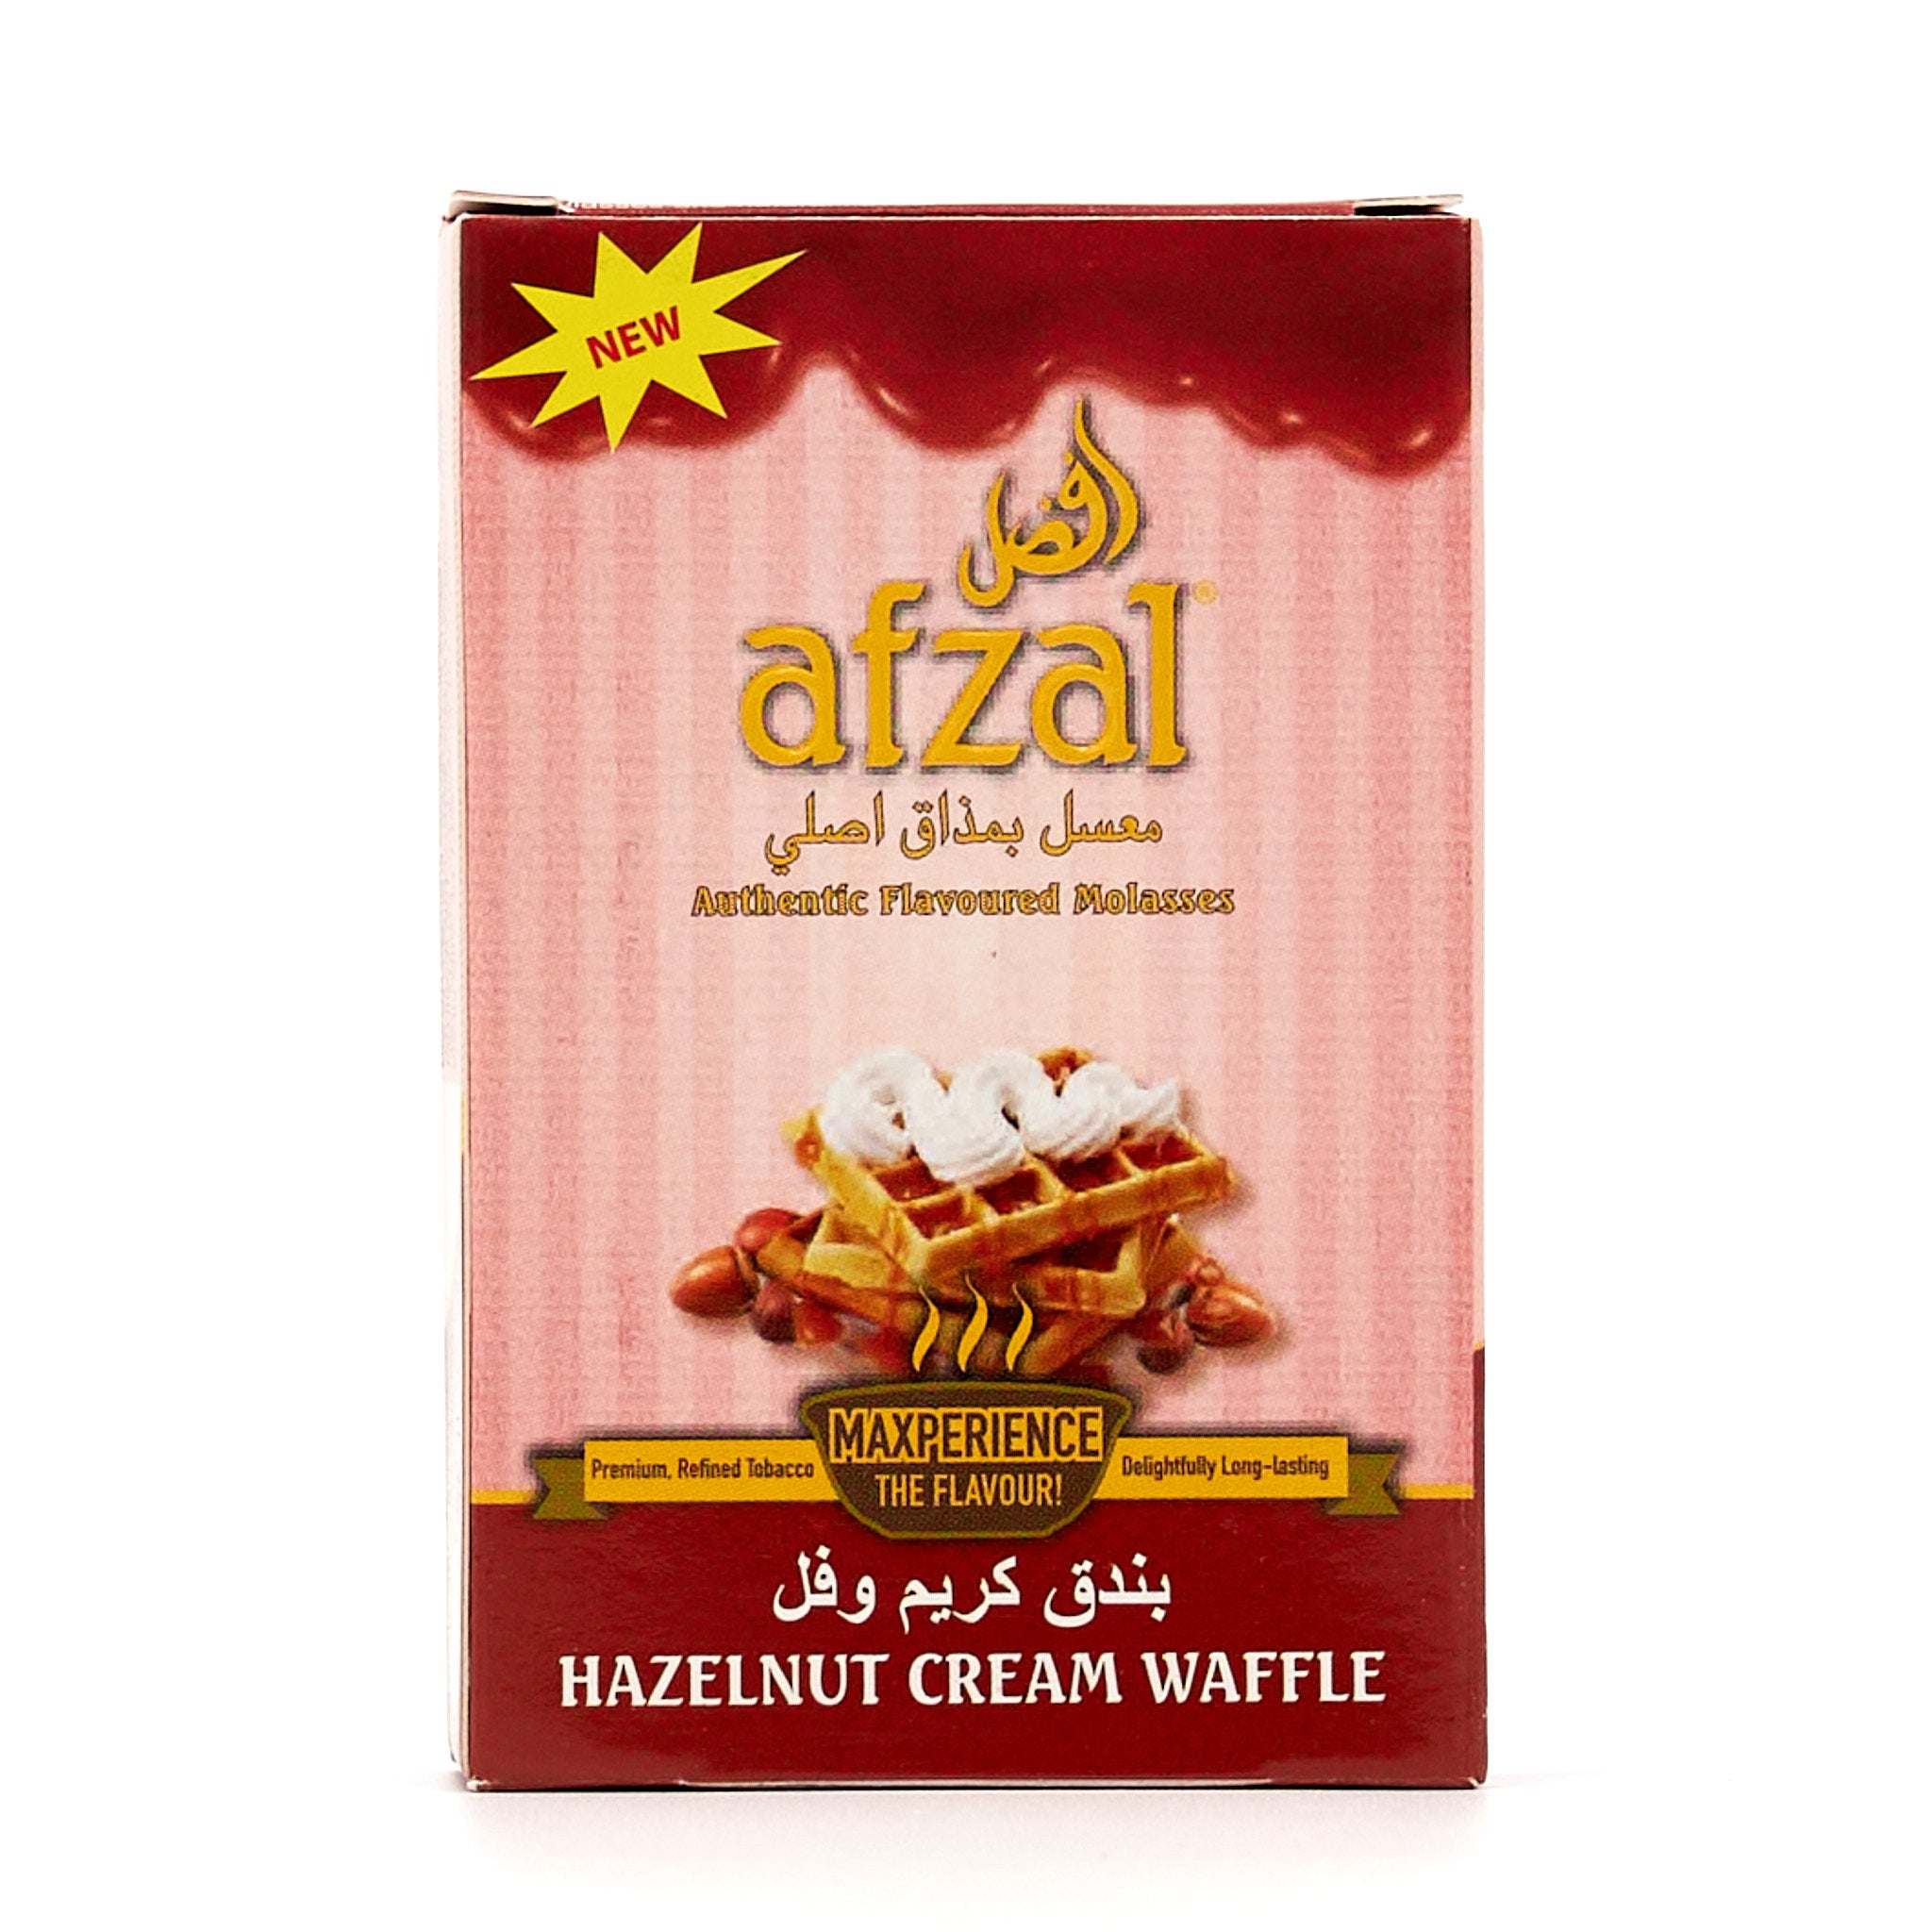 Hazelnut Cream Wafle / ヘーゼルナッツ クリーム ワッフル (50g)